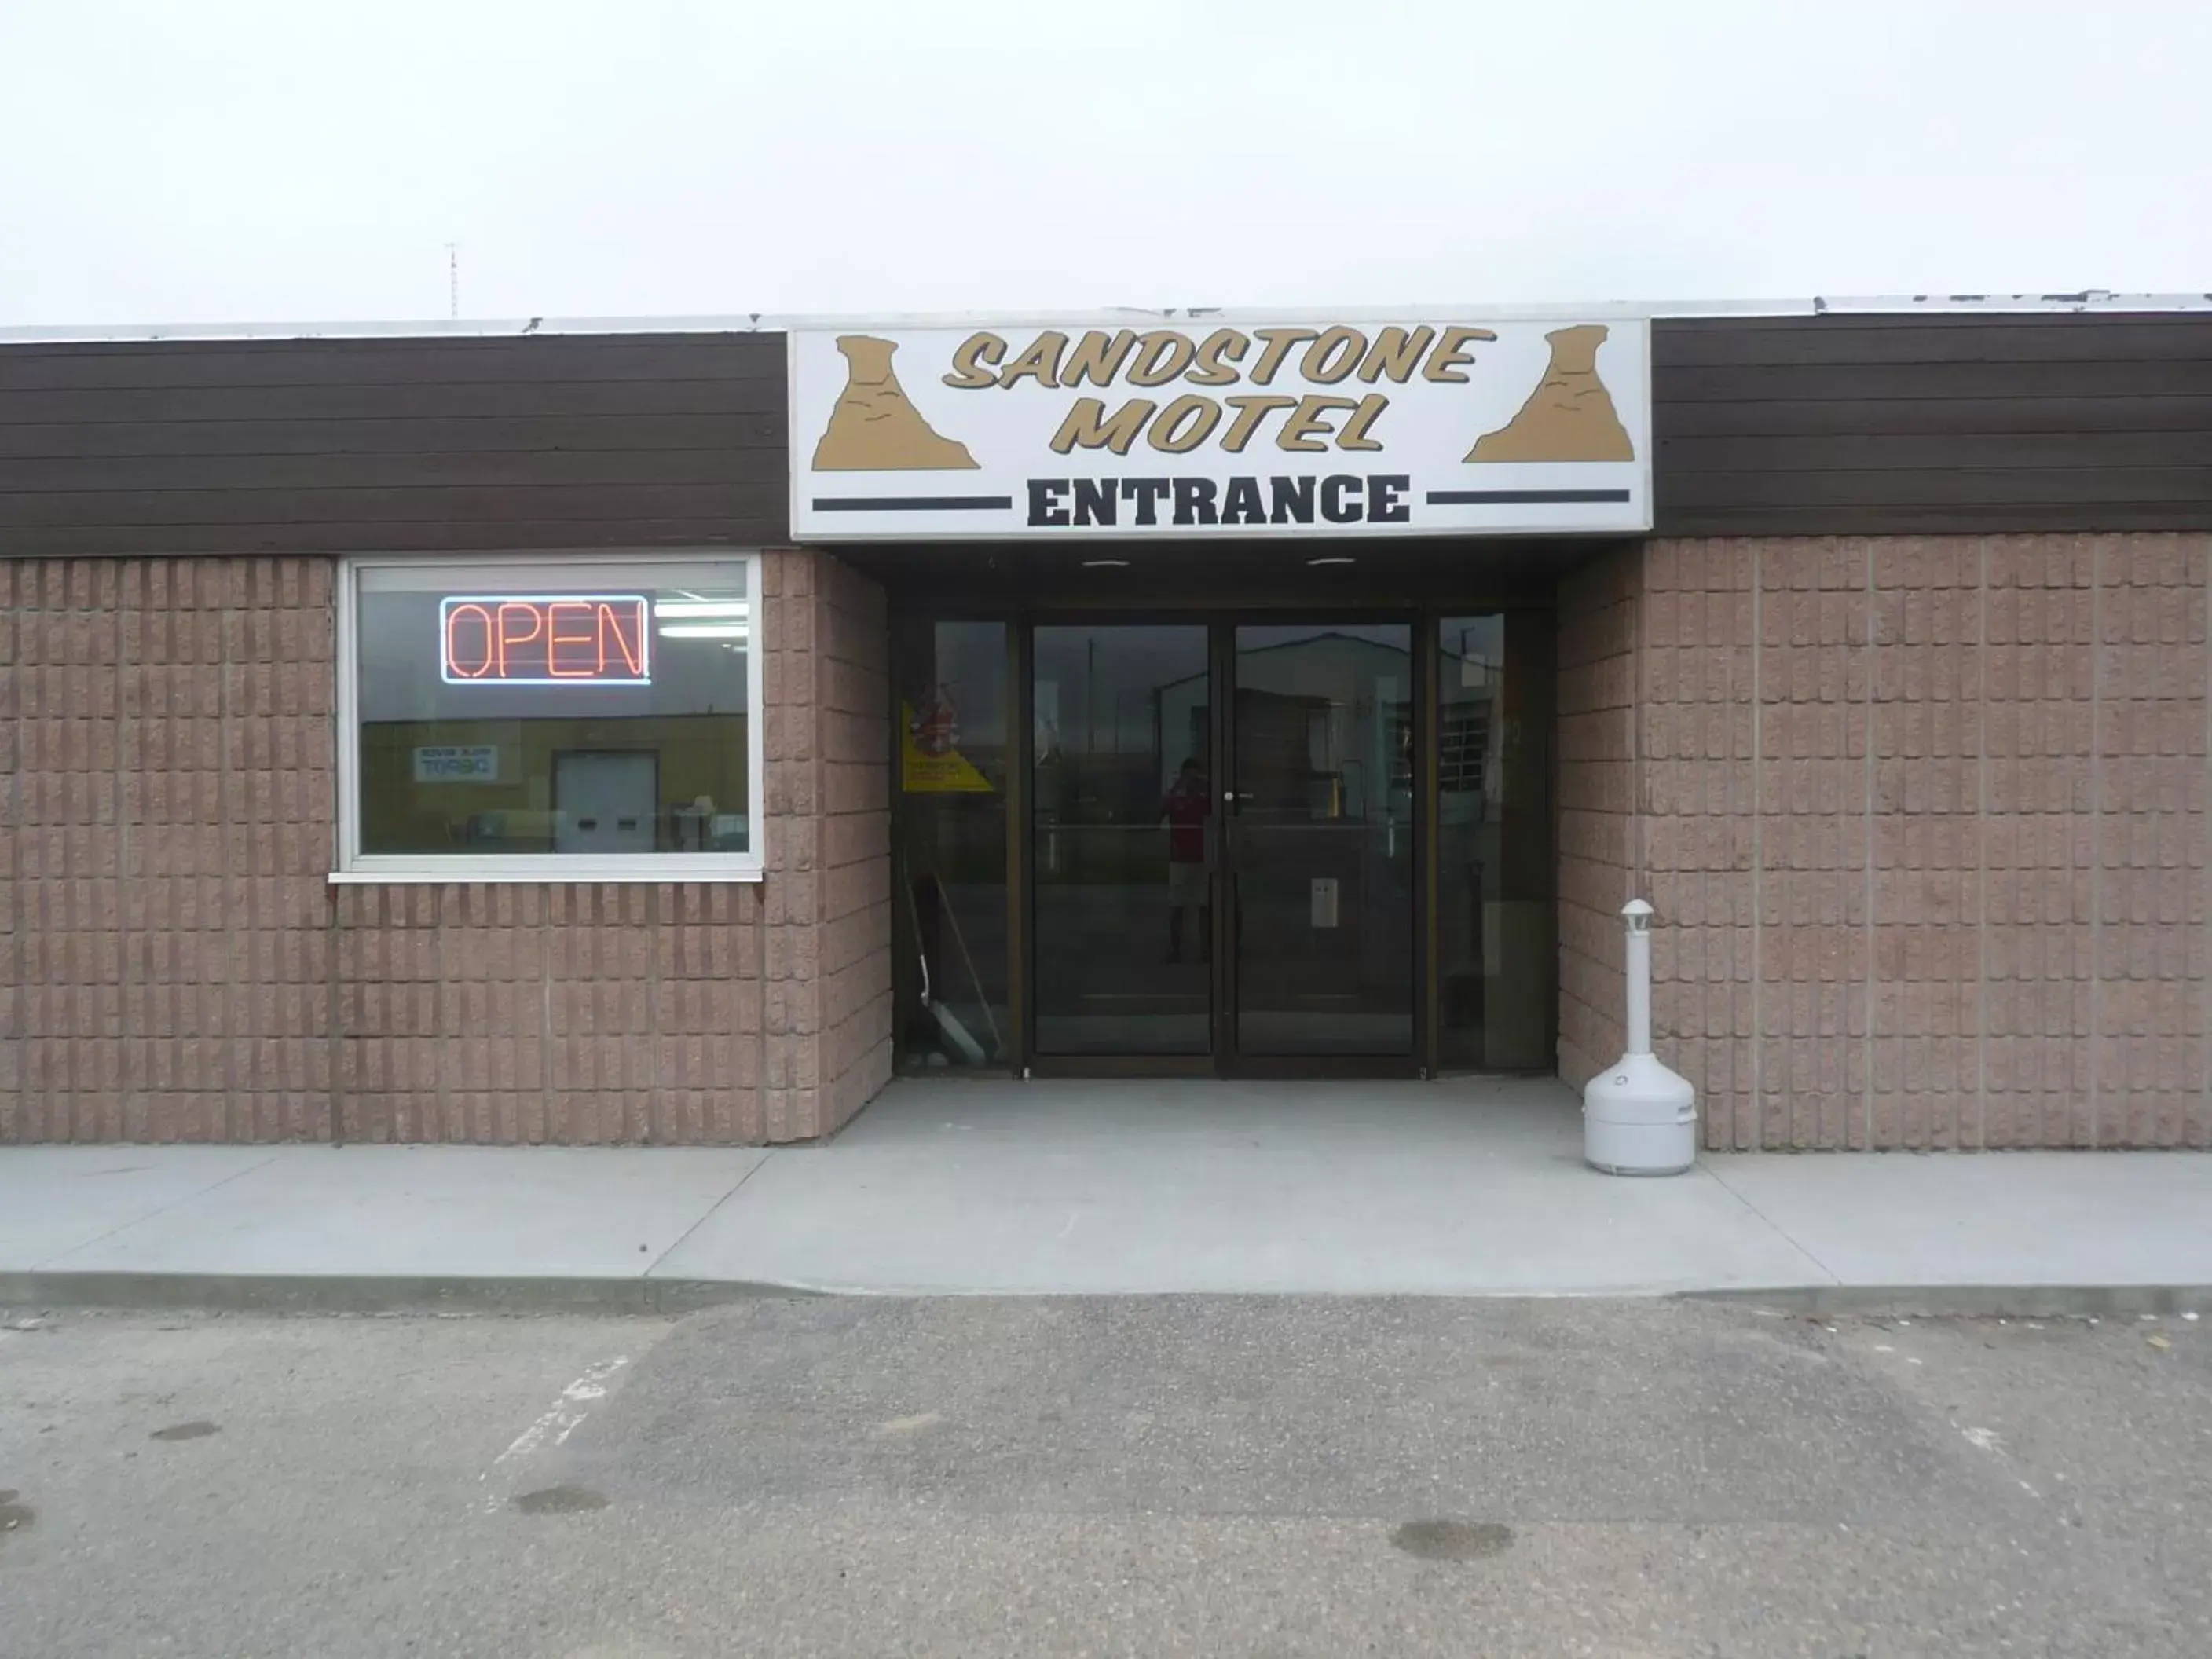 Facade/entrance in Sandstone Motel